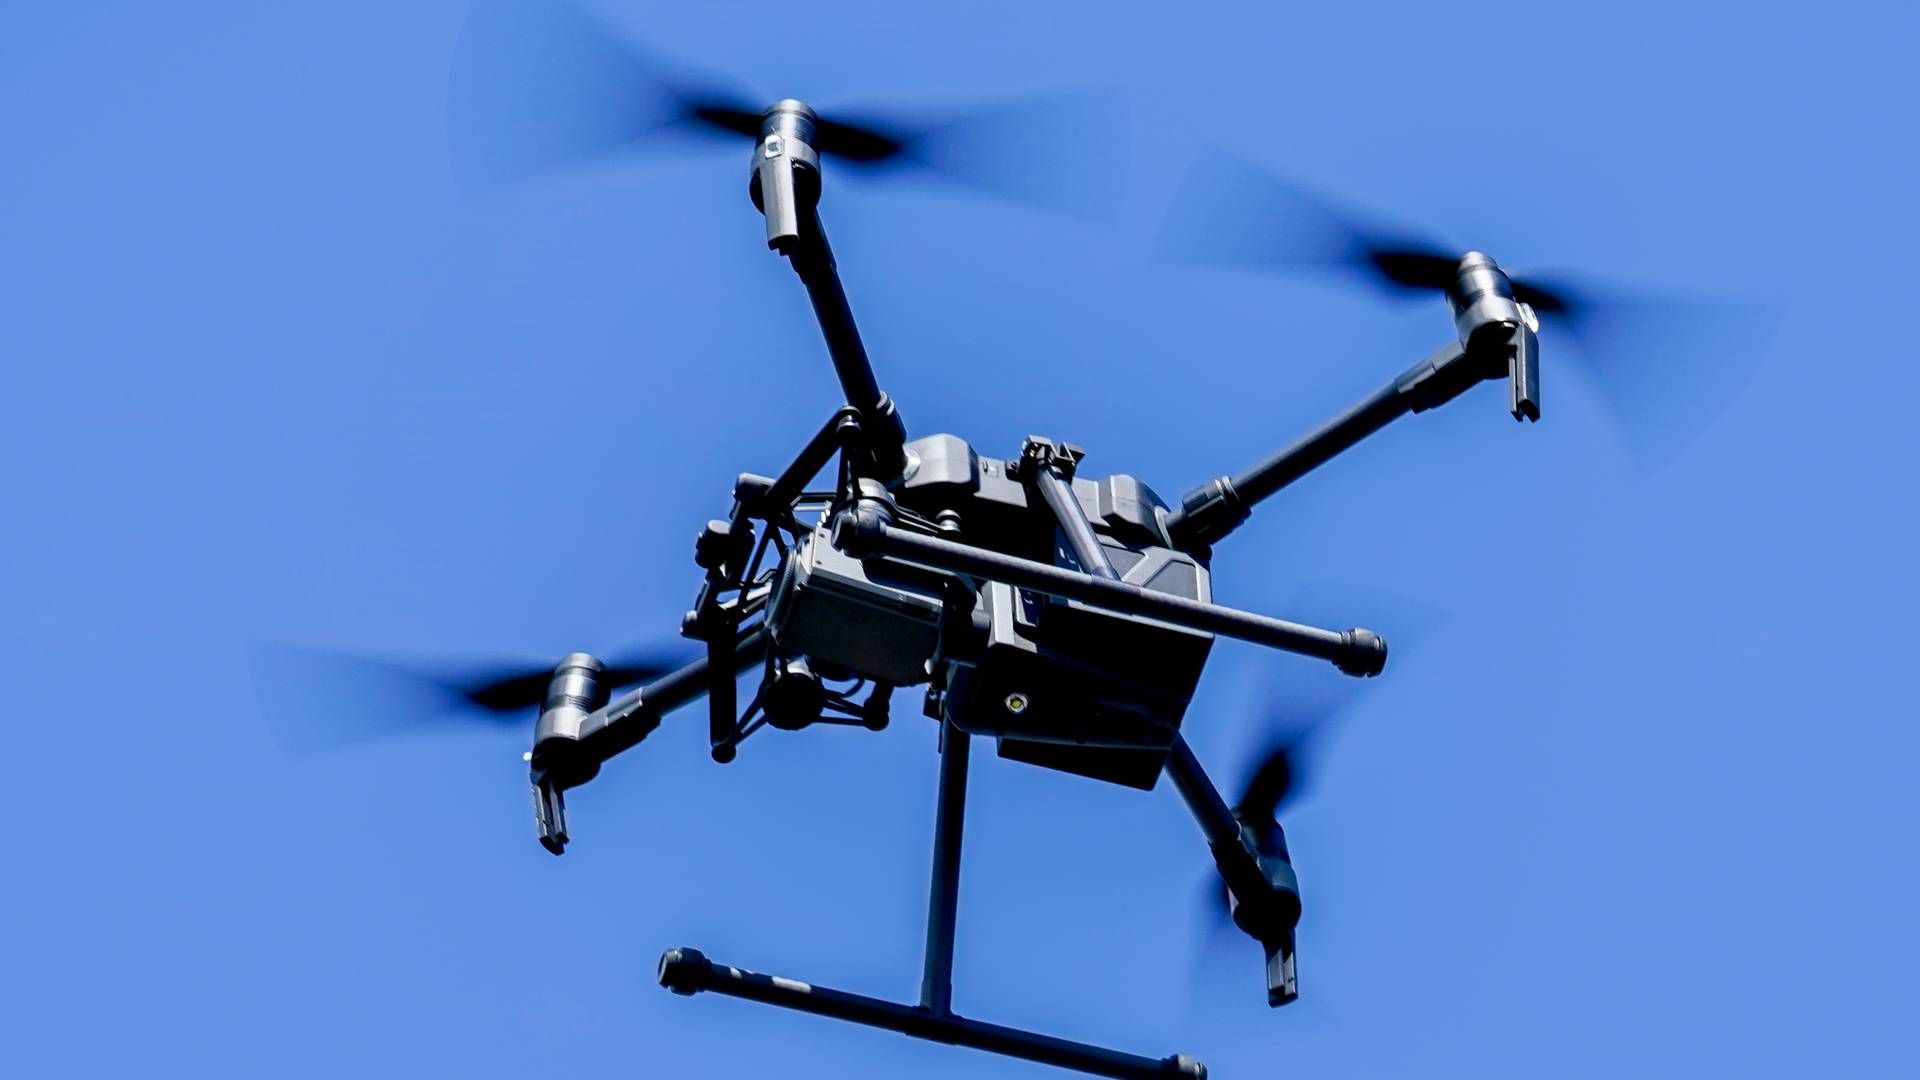 FARLIGE SITUASJONER: Det er flere måter å stanse en drone, men tiltakene kan også skape farlige situasjoner ute på plattformene. | Foto: Heiko Junge / NTB